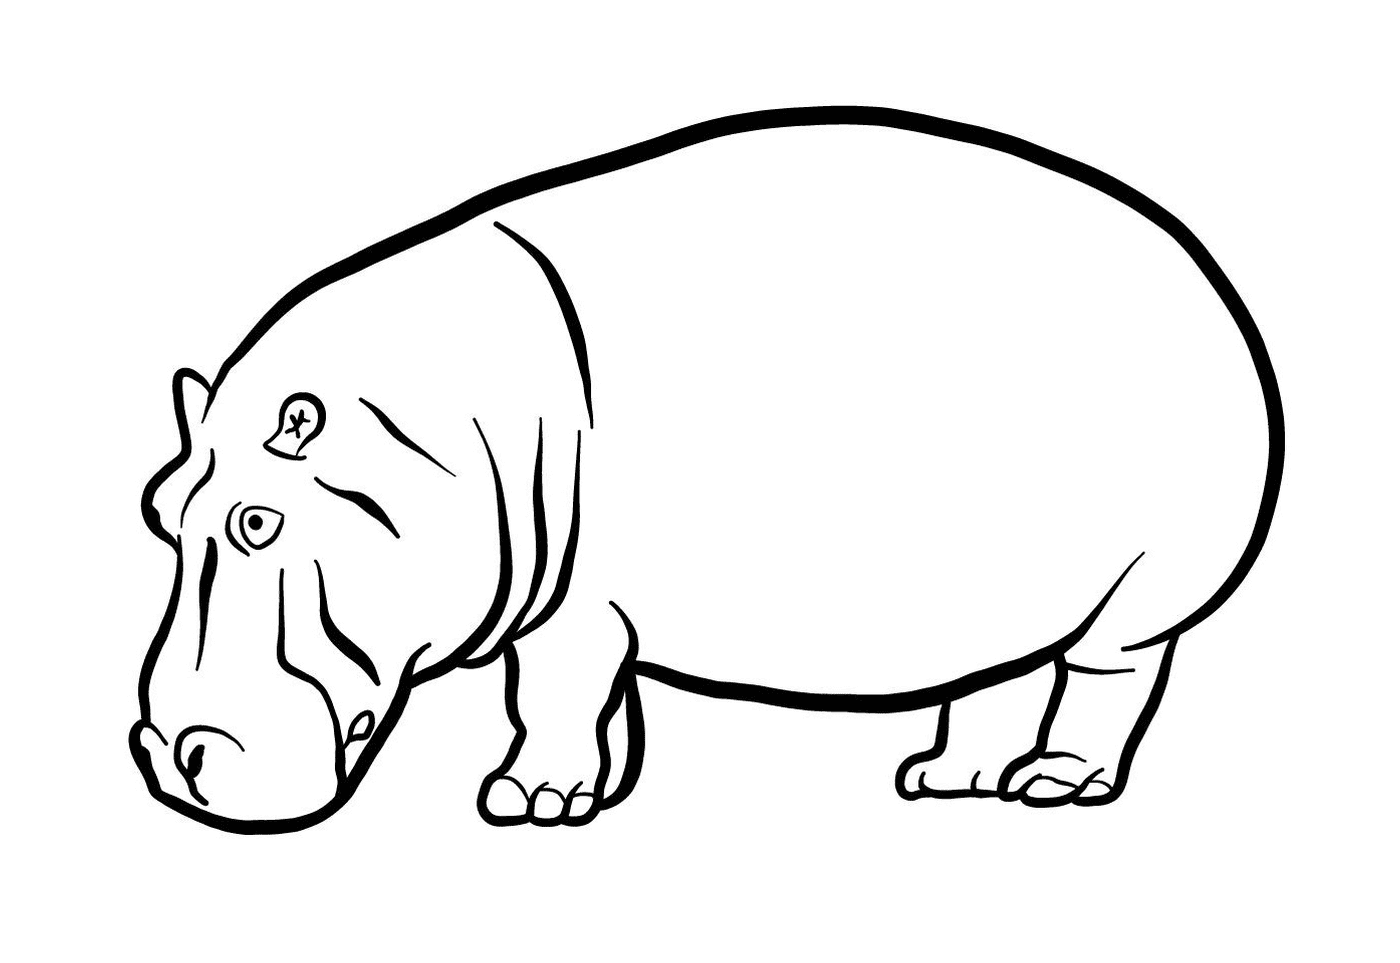   Un hippopotame 